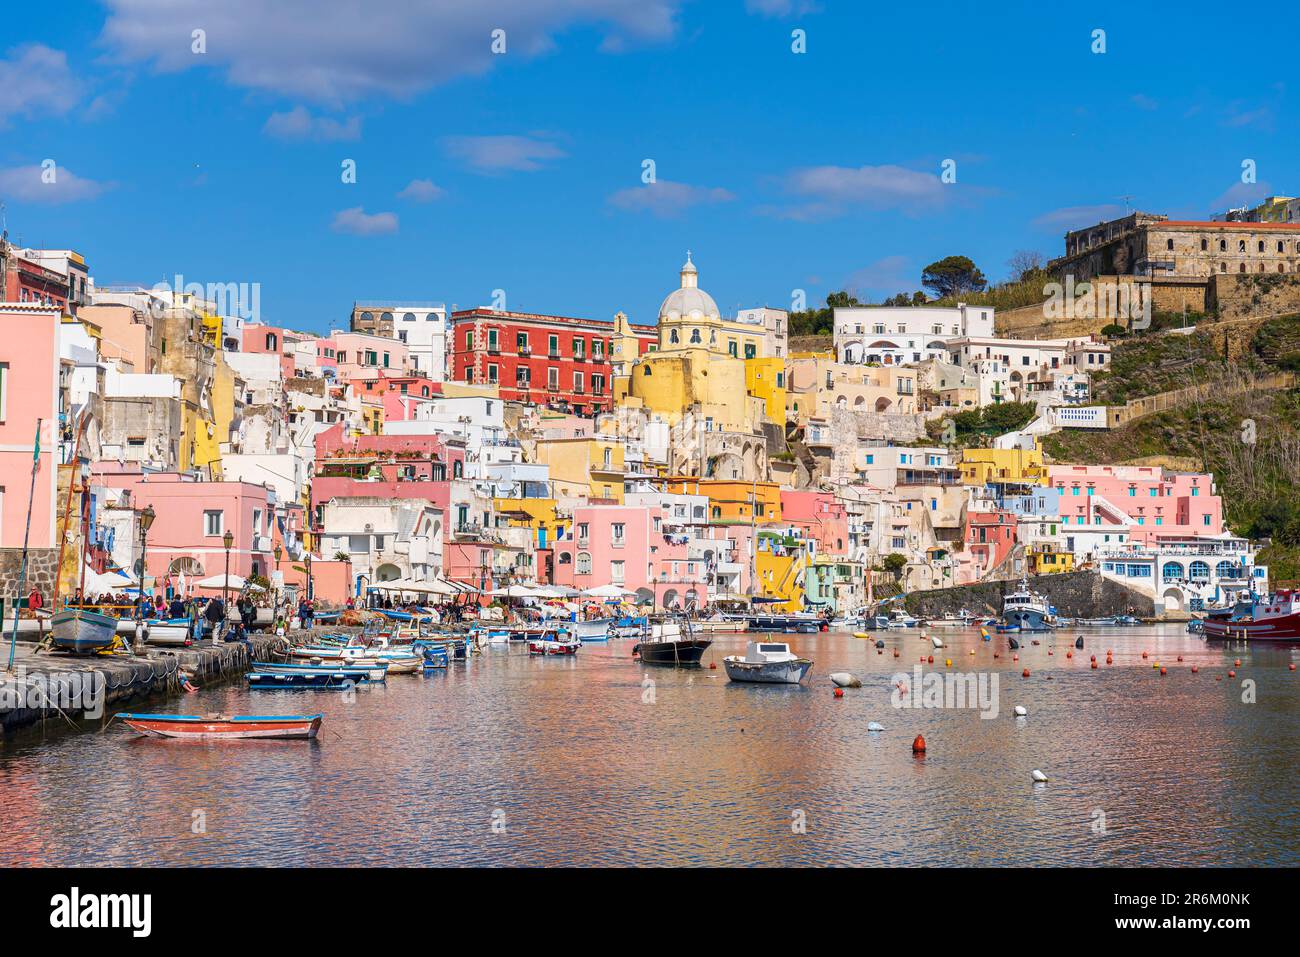 Vista sul famoso e colorato villaggio di pescatori italiano di Marina Corricella, sull'isola di Procida, sul Mar Tirreno Foto Stock